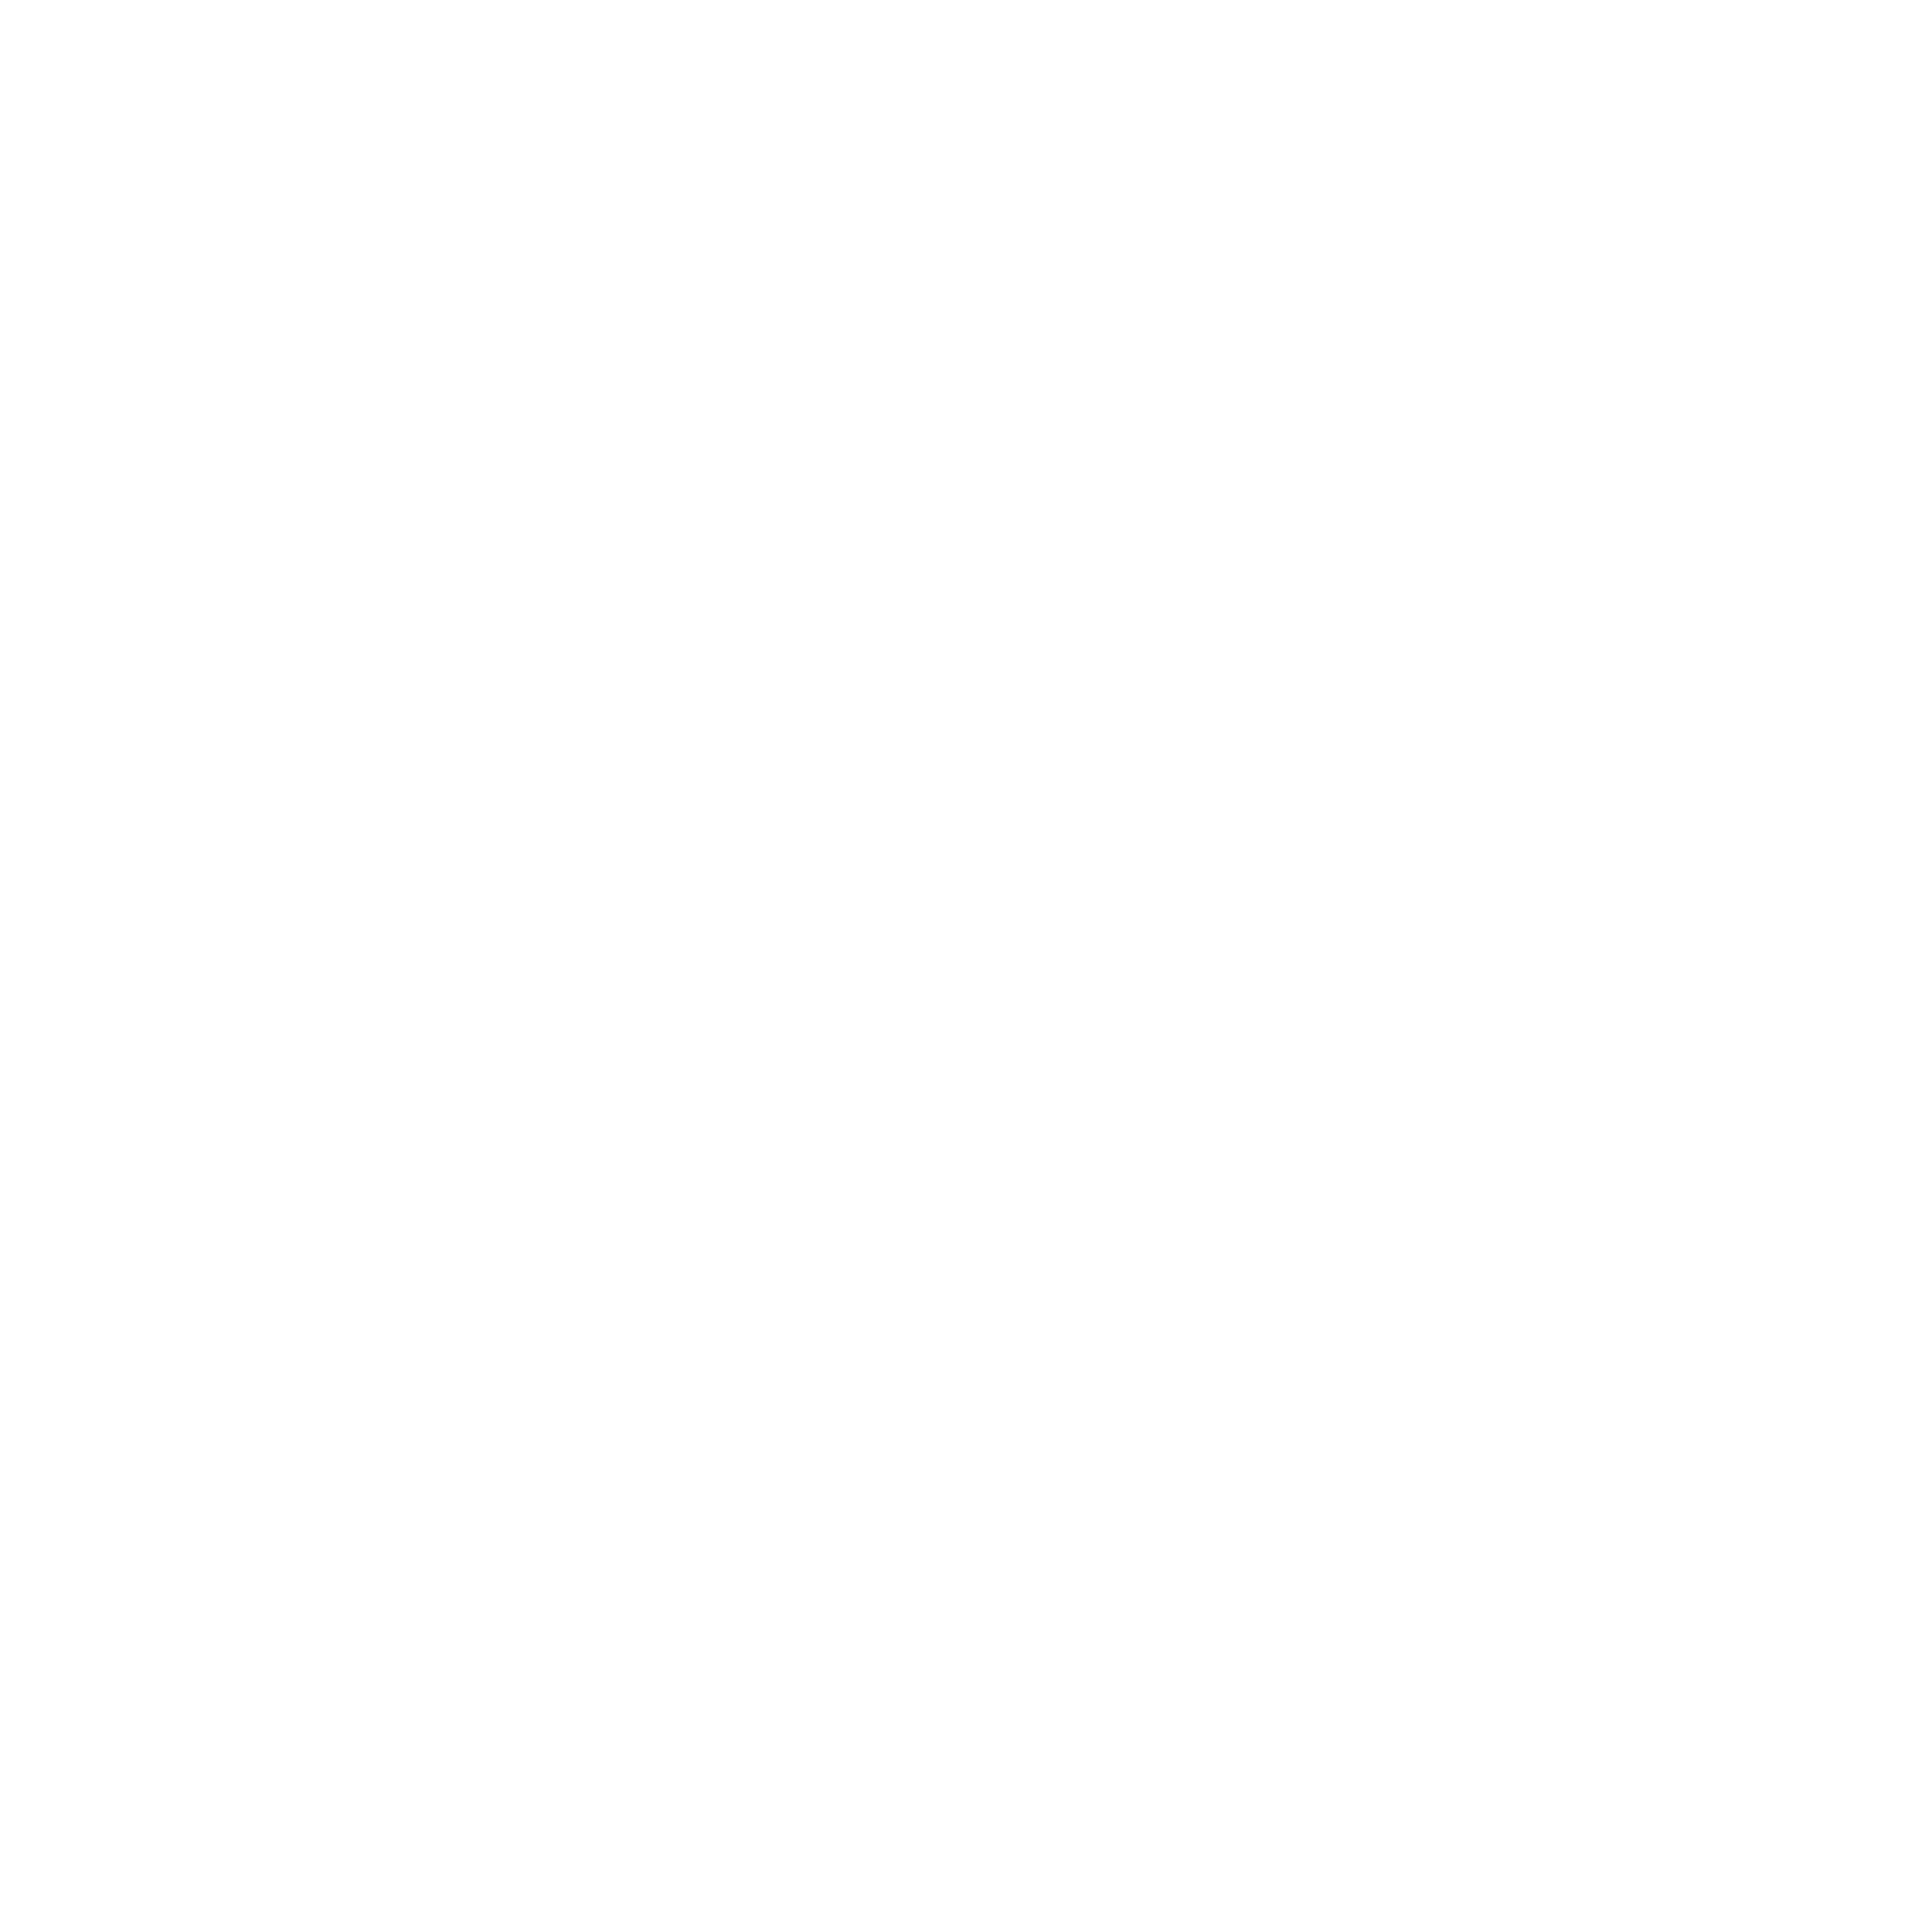 sage software